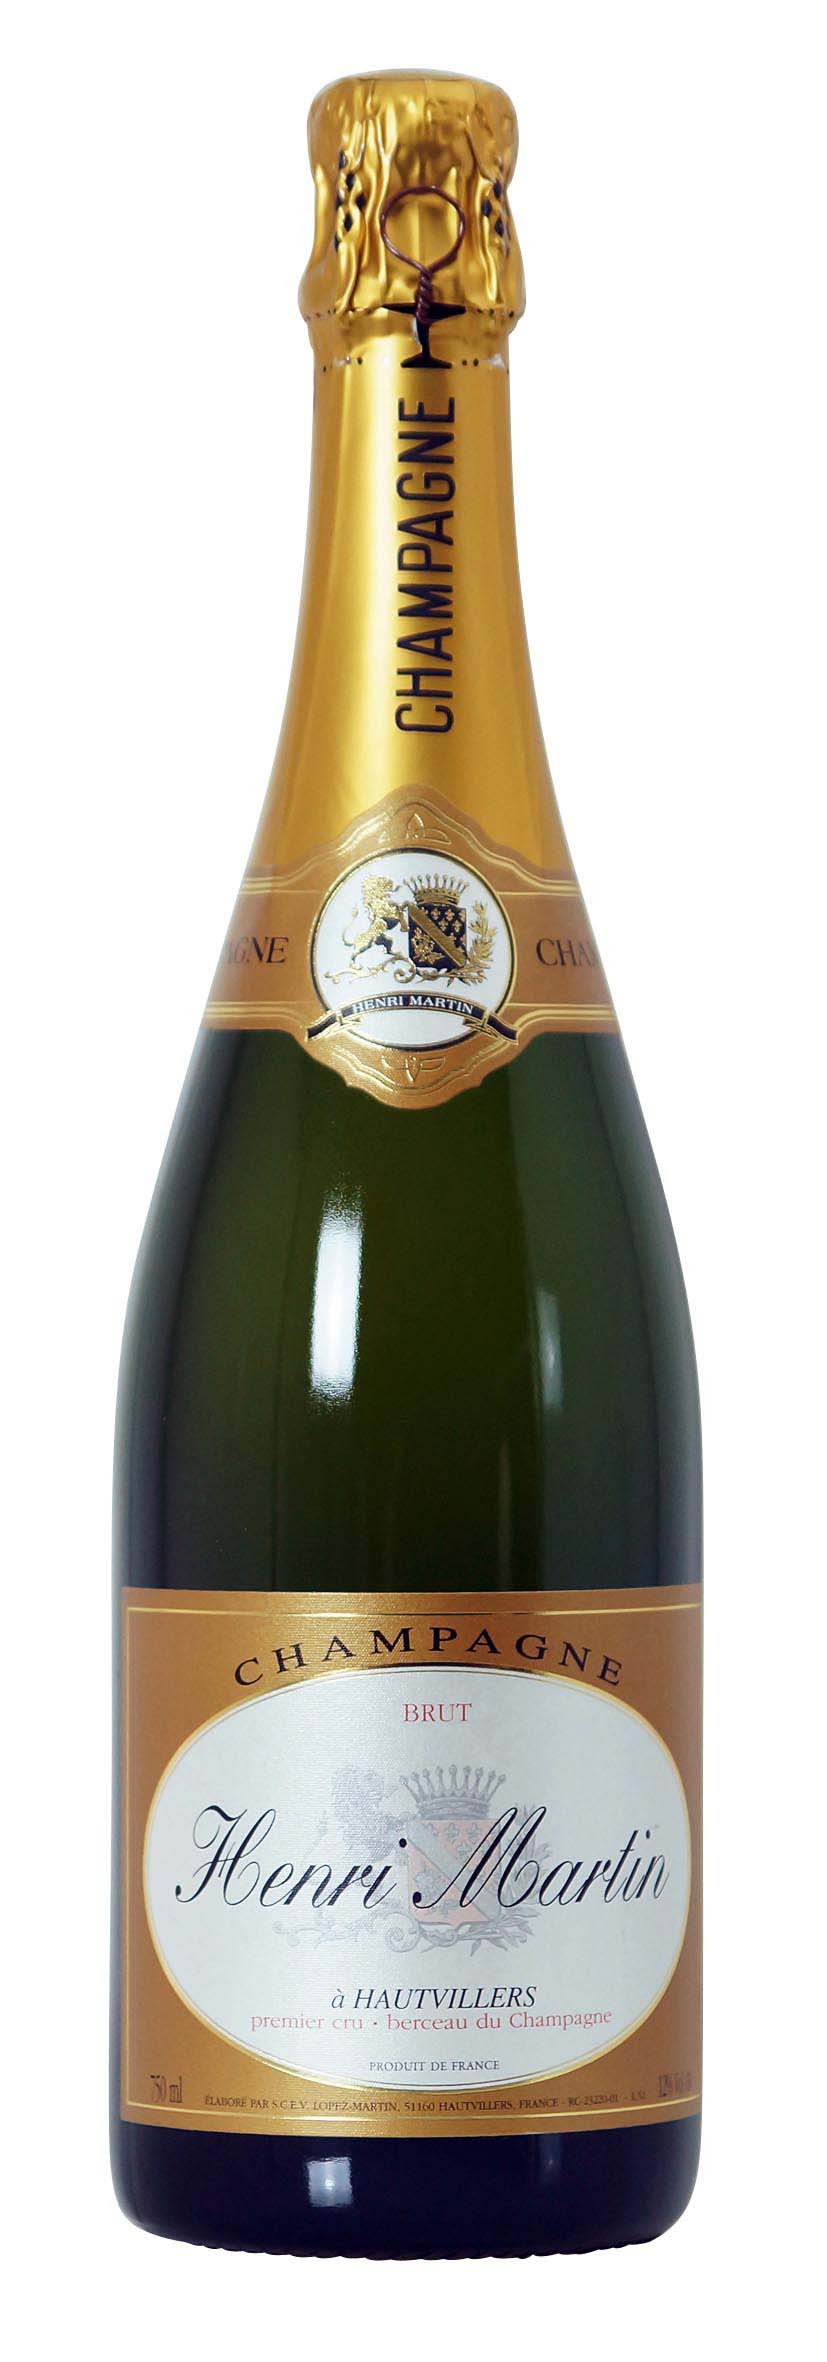 Champagne AOC Premier Cru Cuvée Henri Martin Brut 0